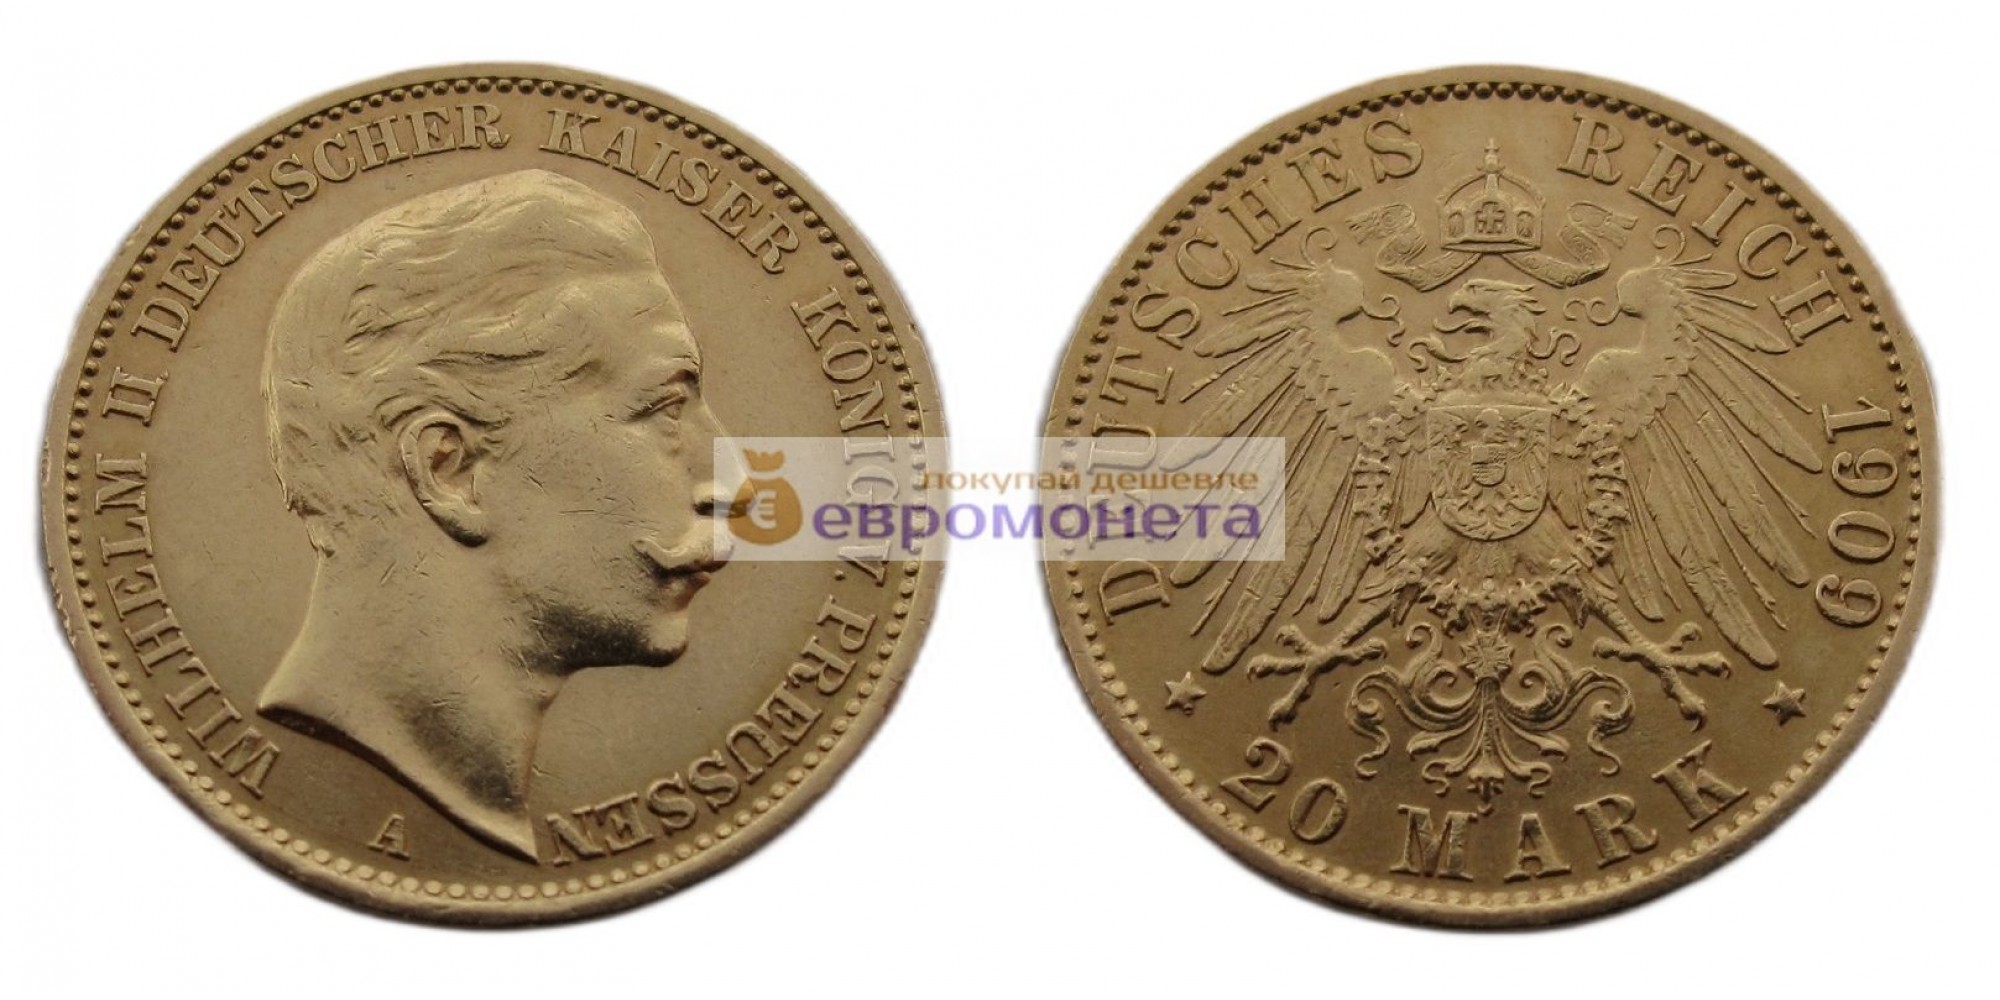 Германская империя Пруссия 20 марок 1909 год "A" Вильгельм II. Золото